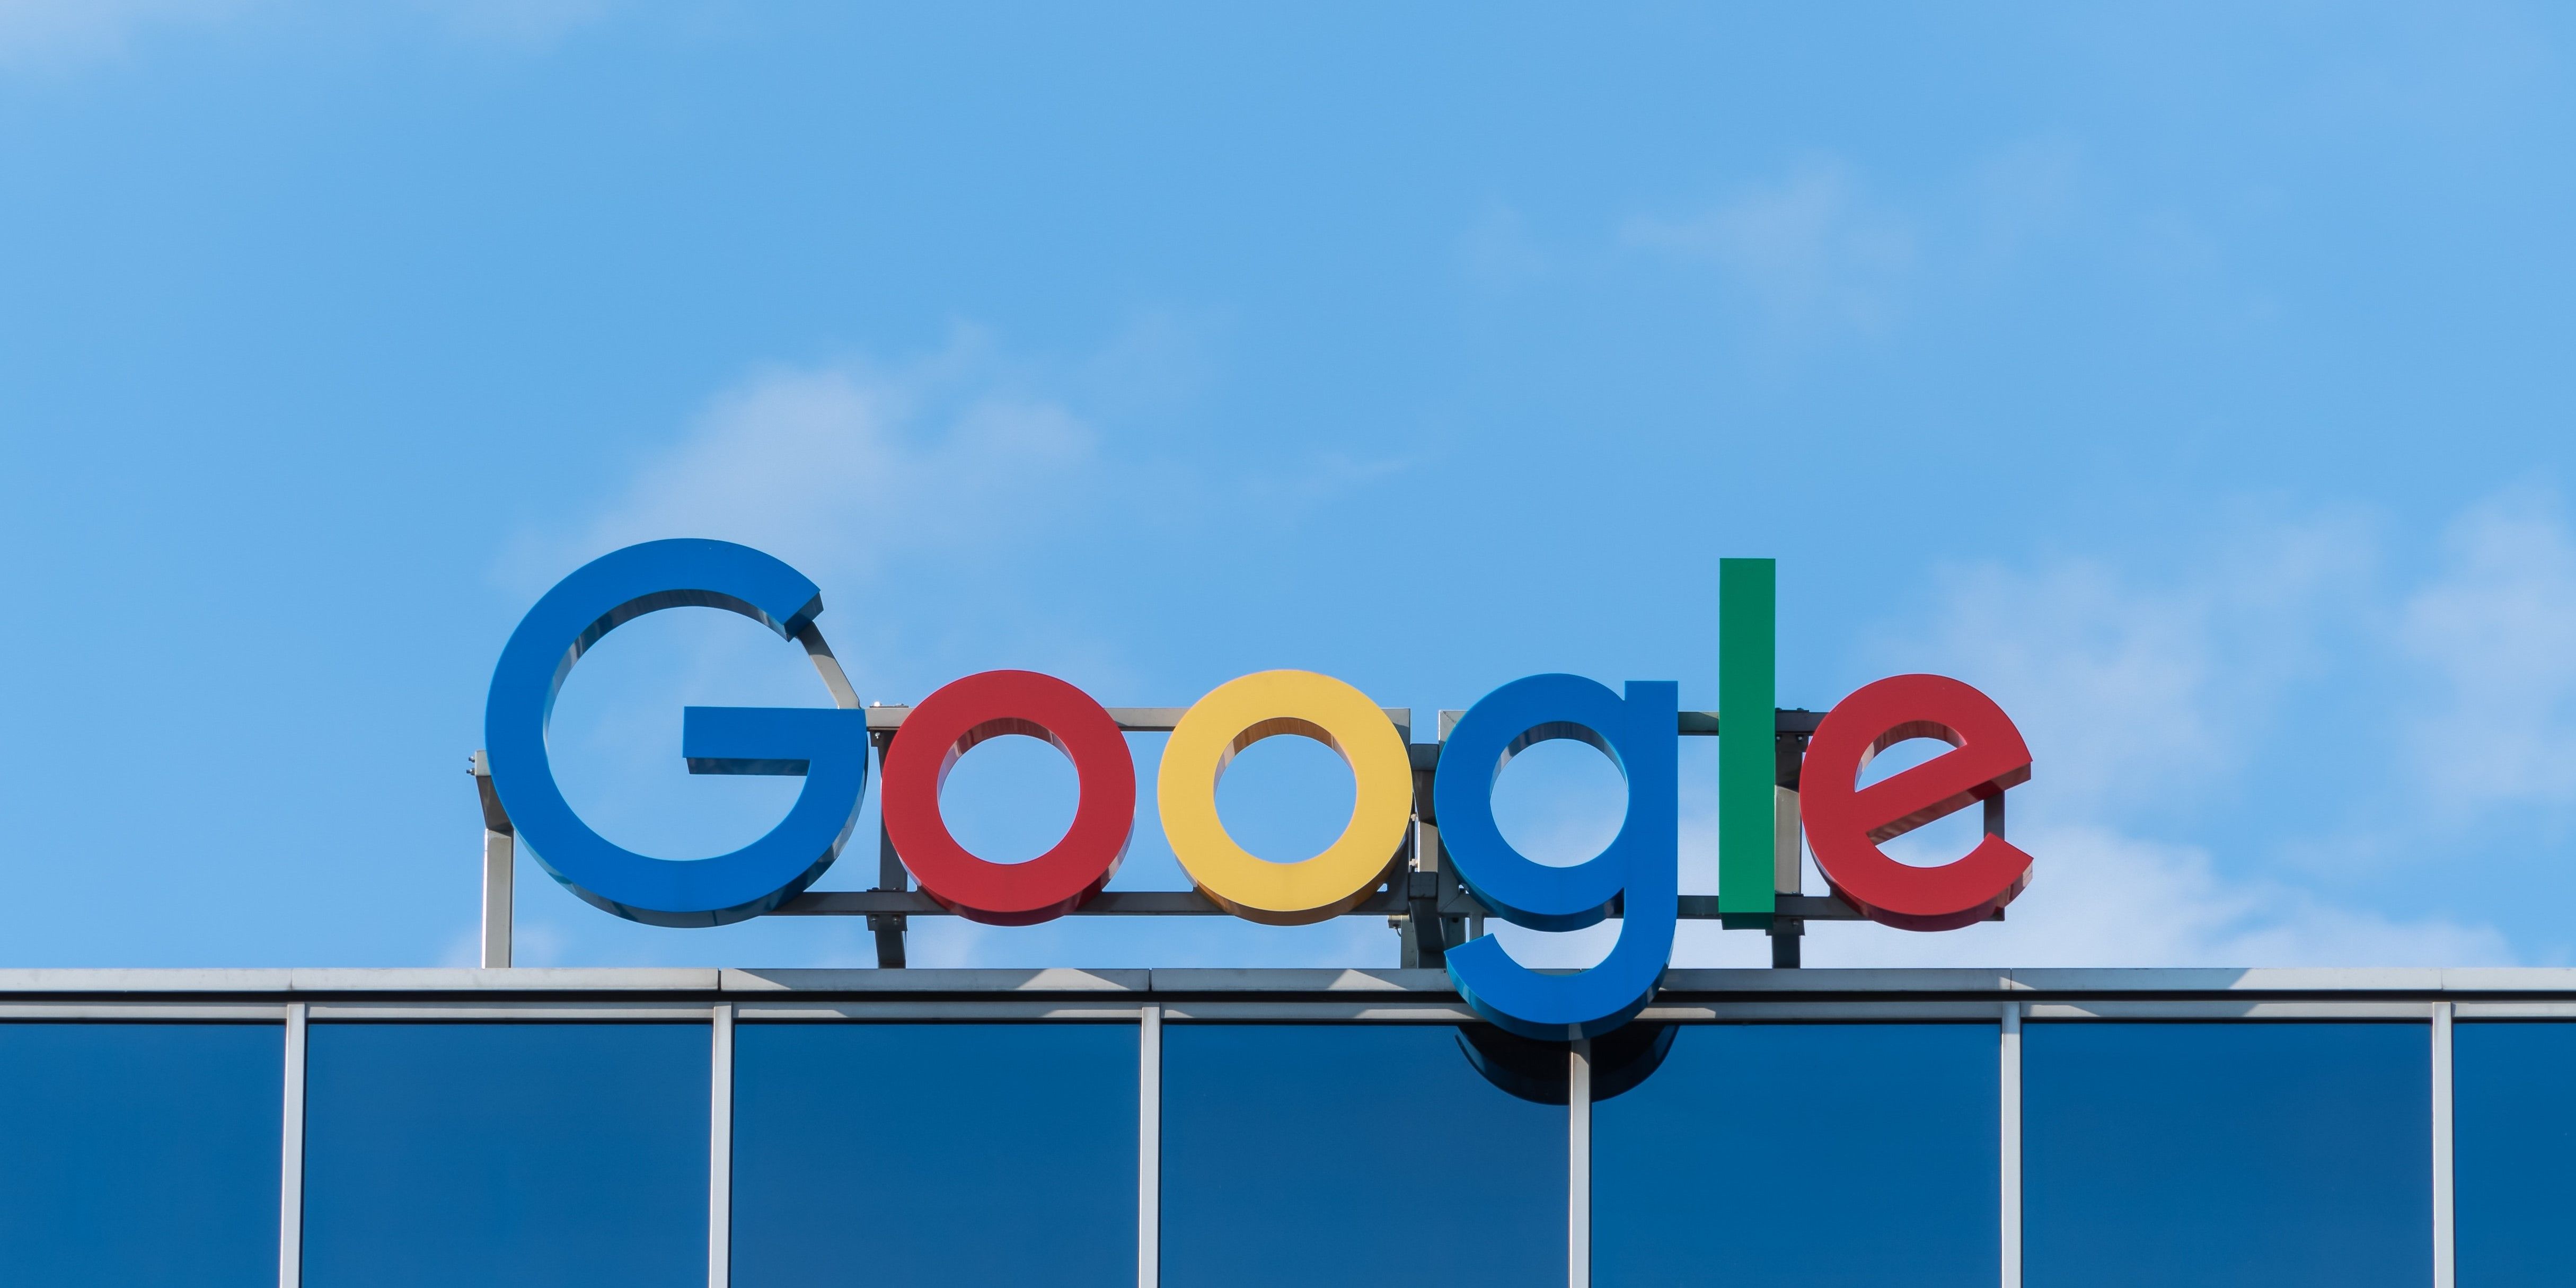 Google initiates workforce reductions across multiple teams